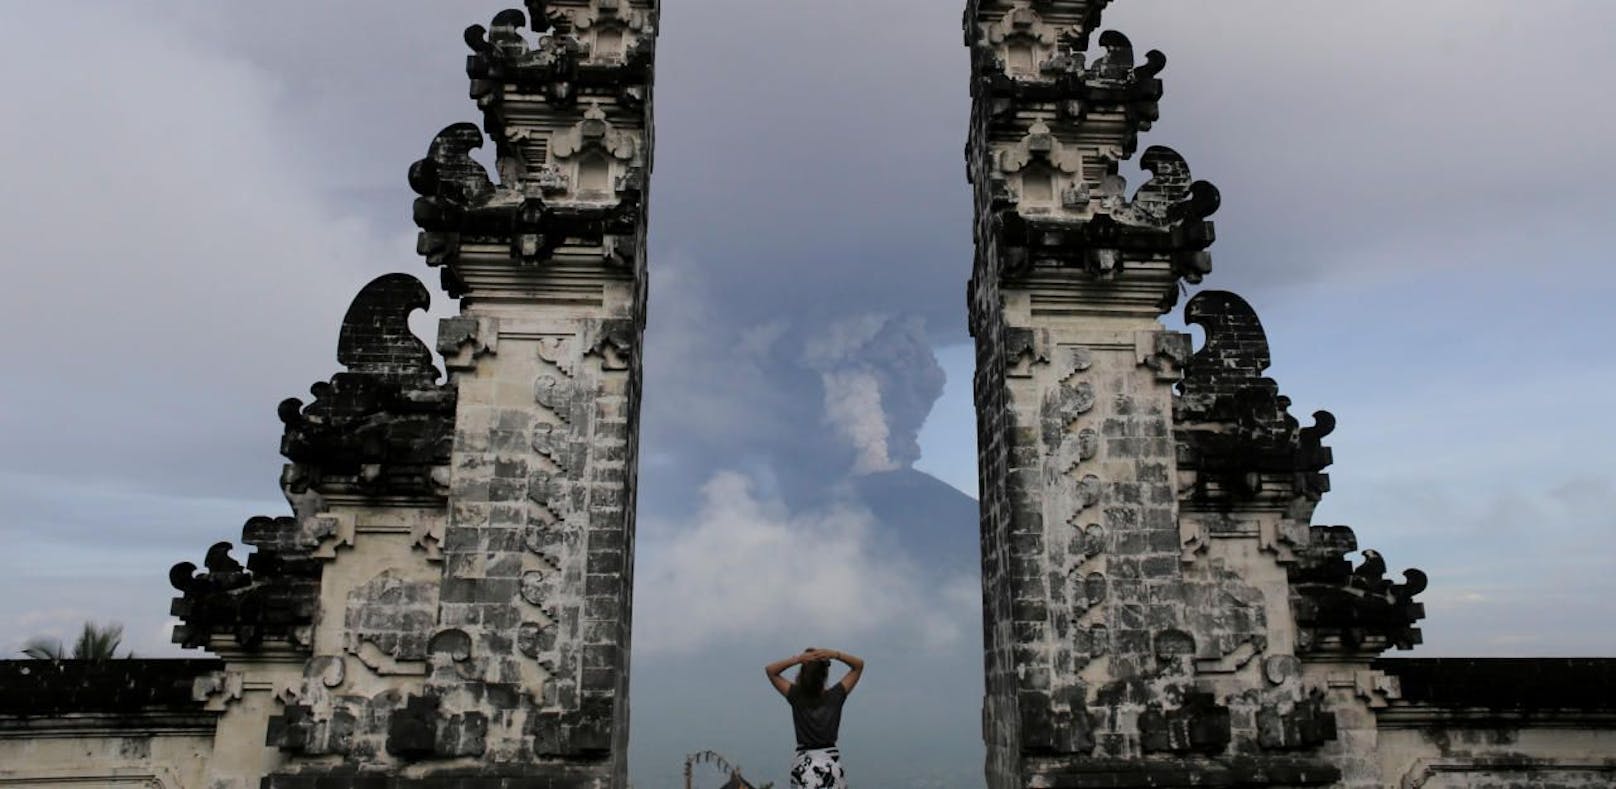 Nach nackten Frauen – Bali teilt "Touristenkarte" aus